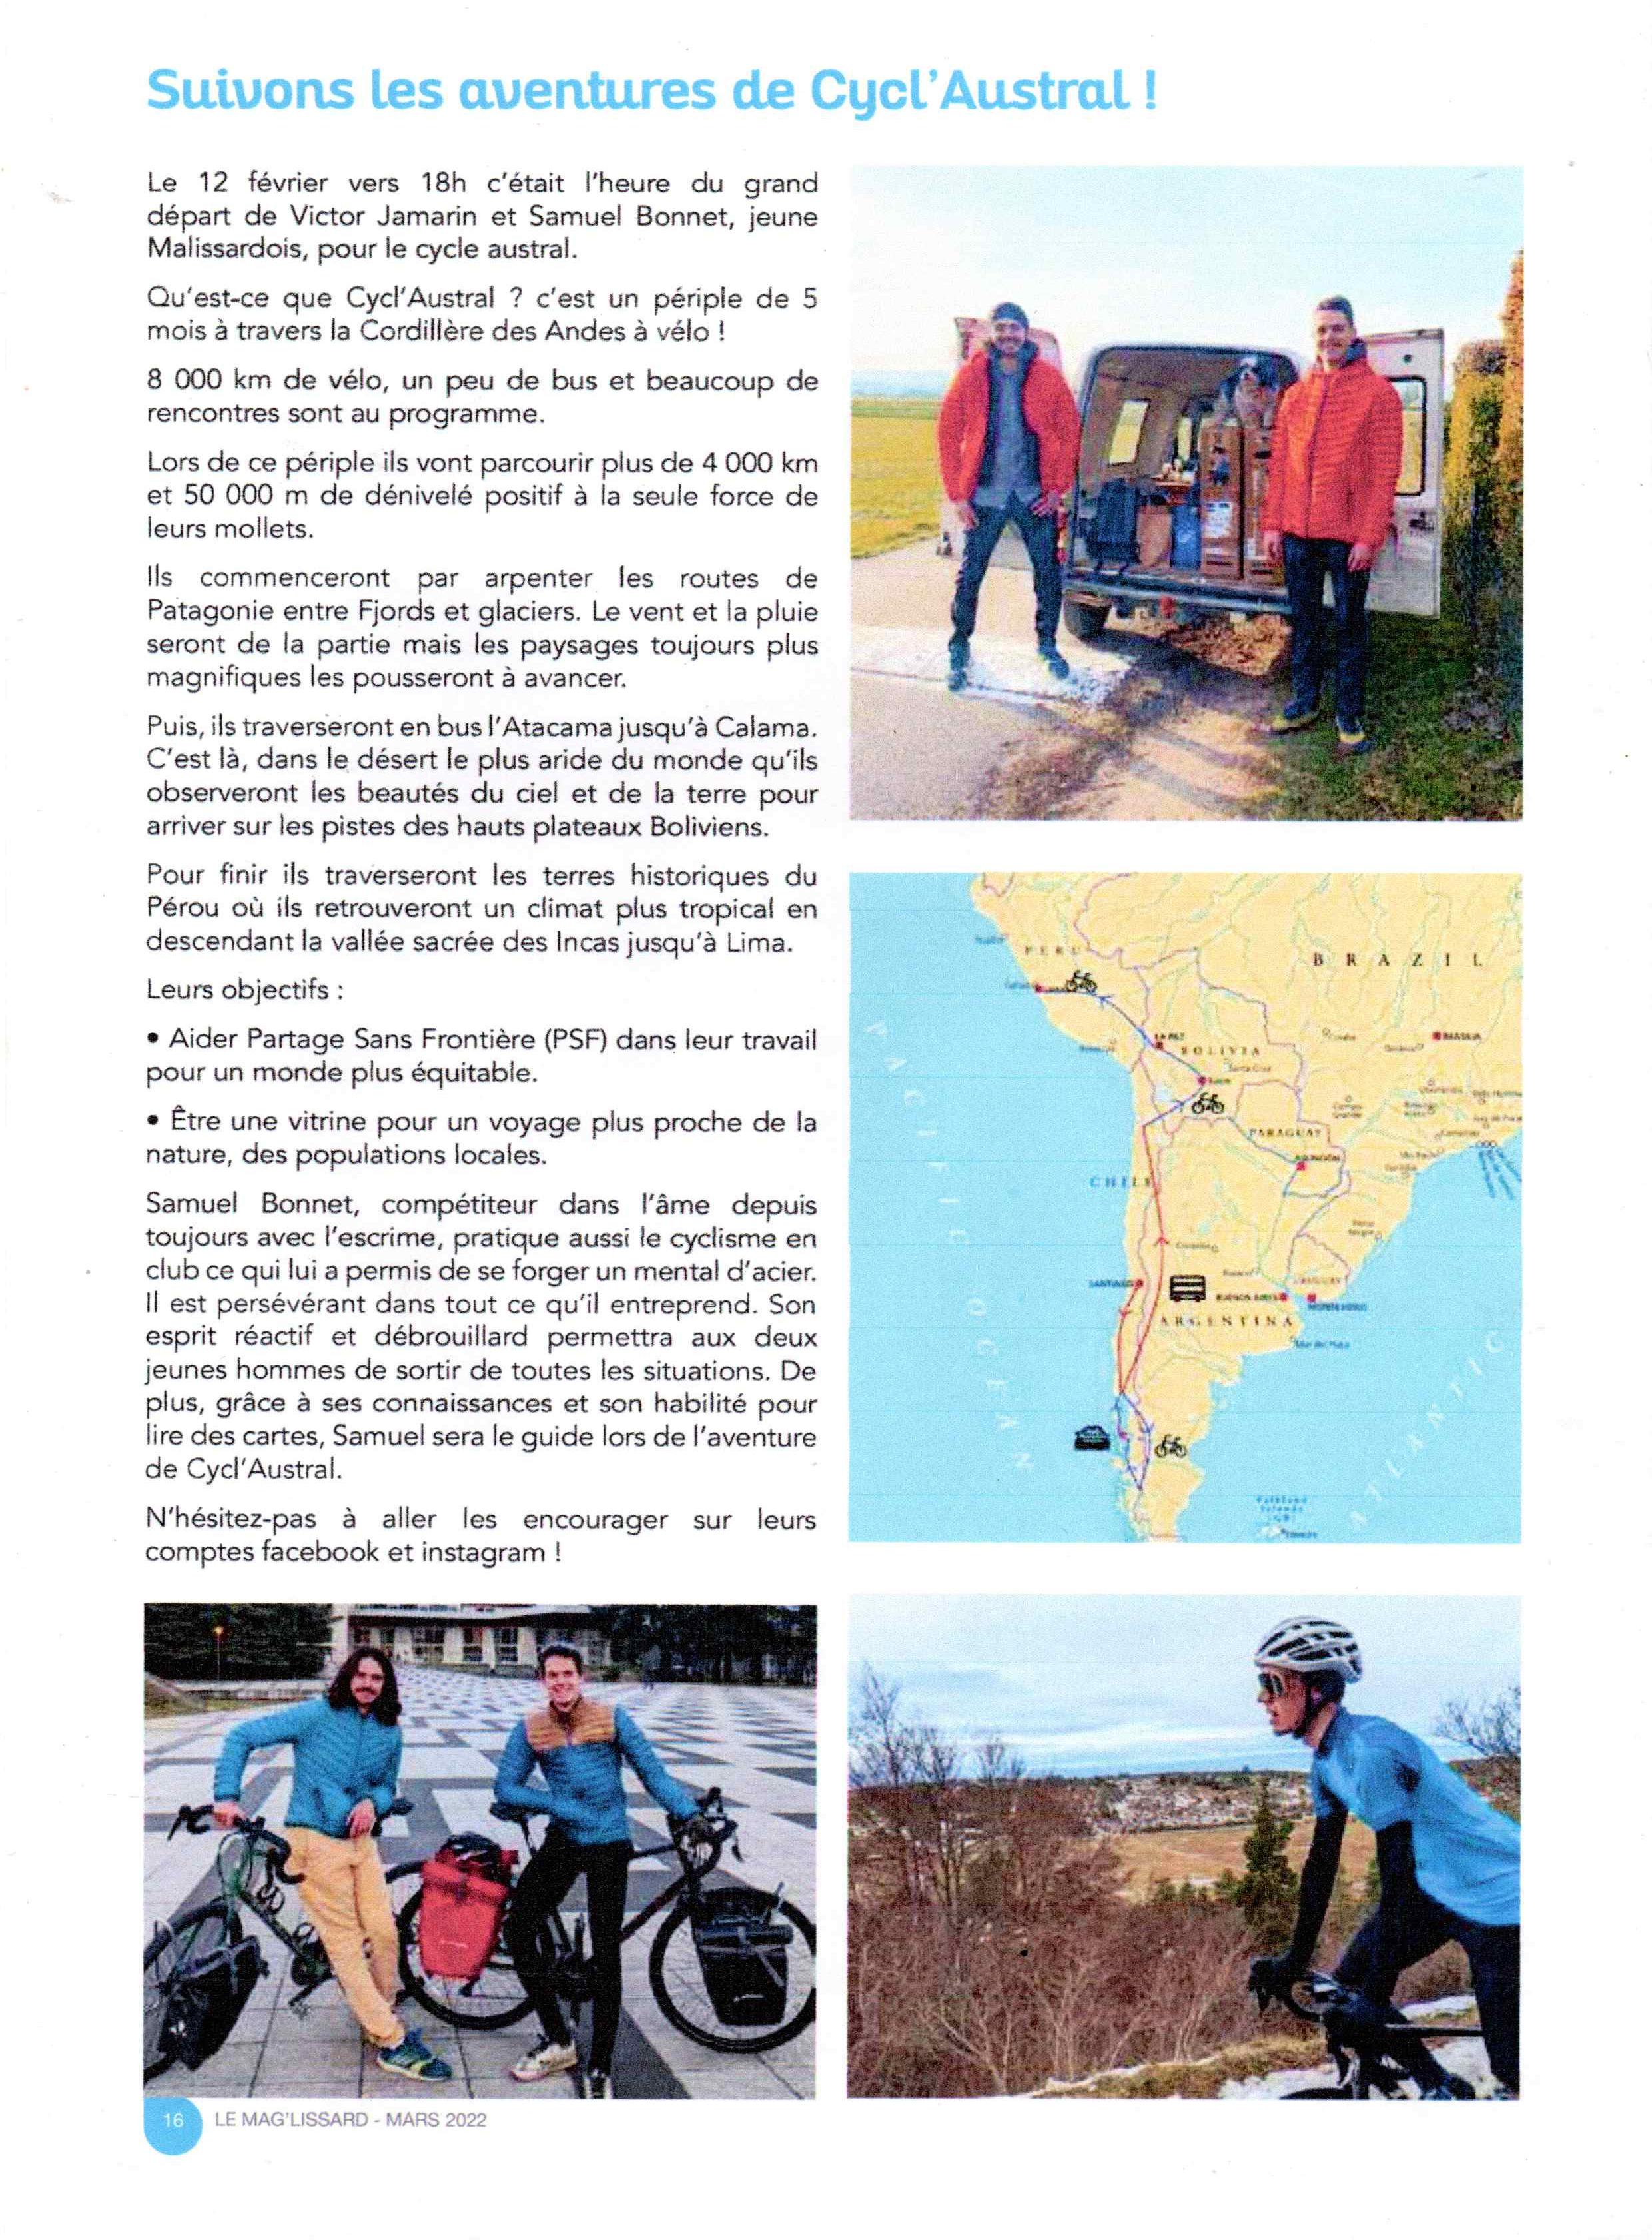 Le bulletin d'information de Malissard présente le périple de Samuel Bonnet et Victor Jamarin dans le cadre de Cycl'Austral